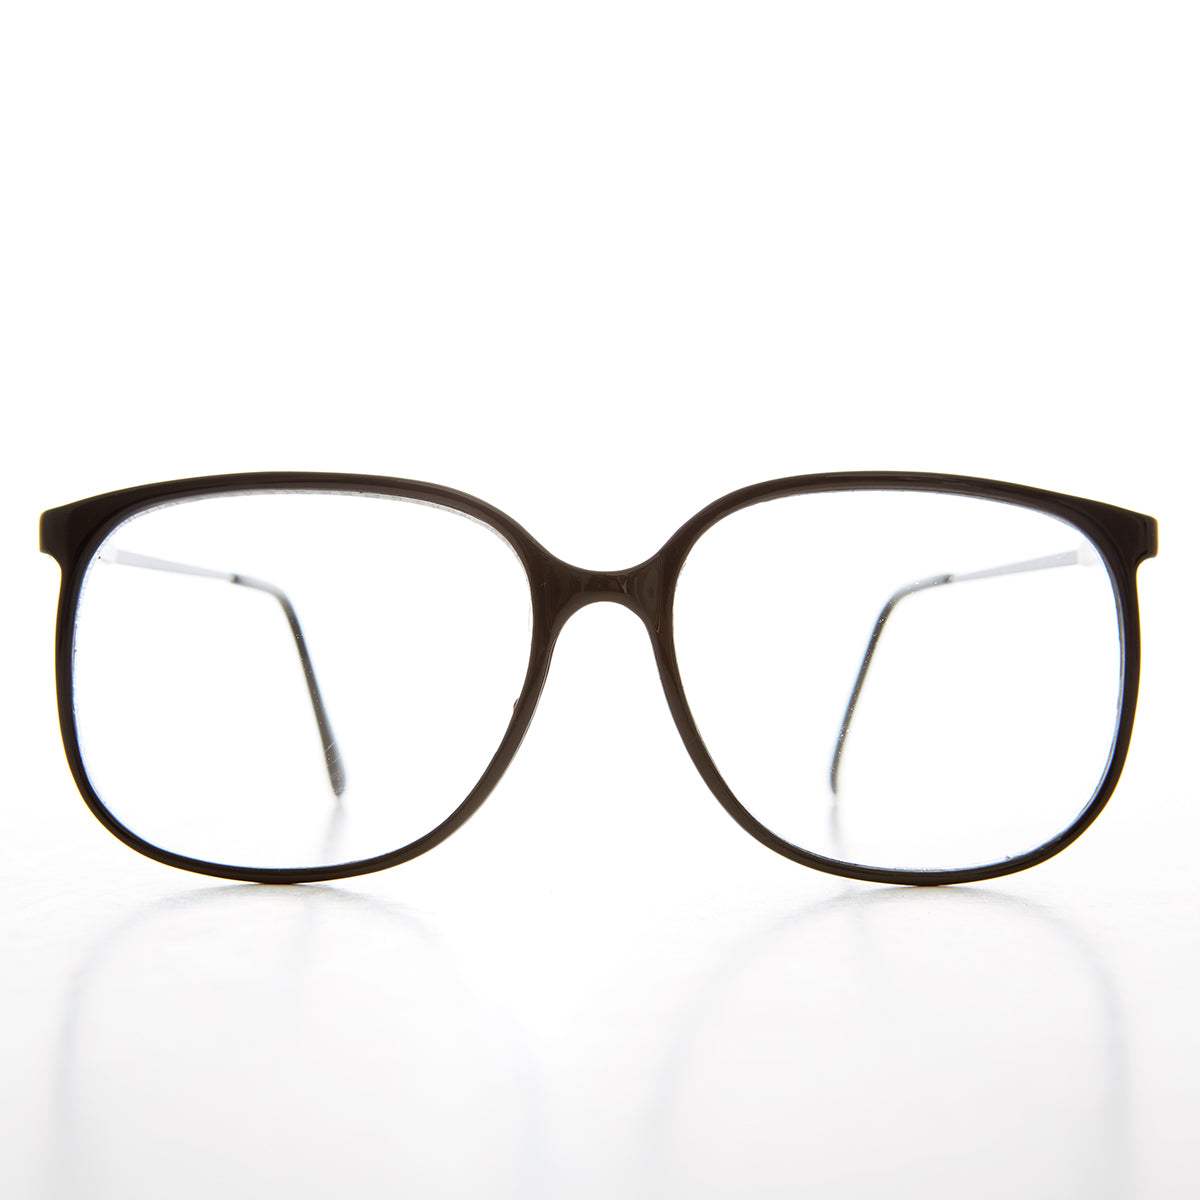 80s nerd clear lens glasses